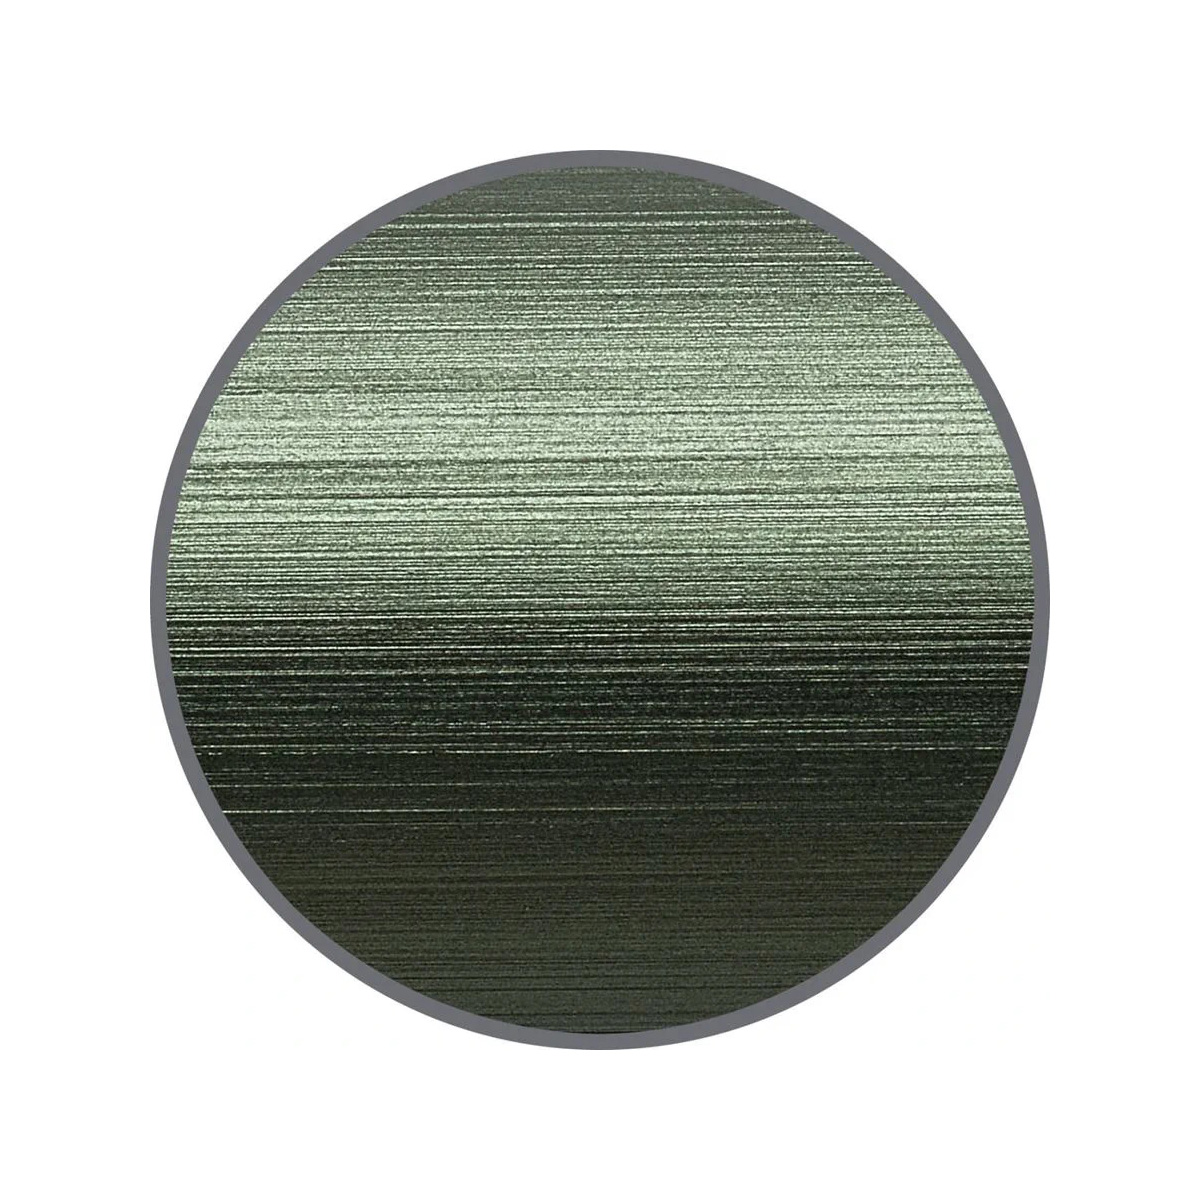 Faber Castell - Neo Slim - Stilografica - Alumnium verde